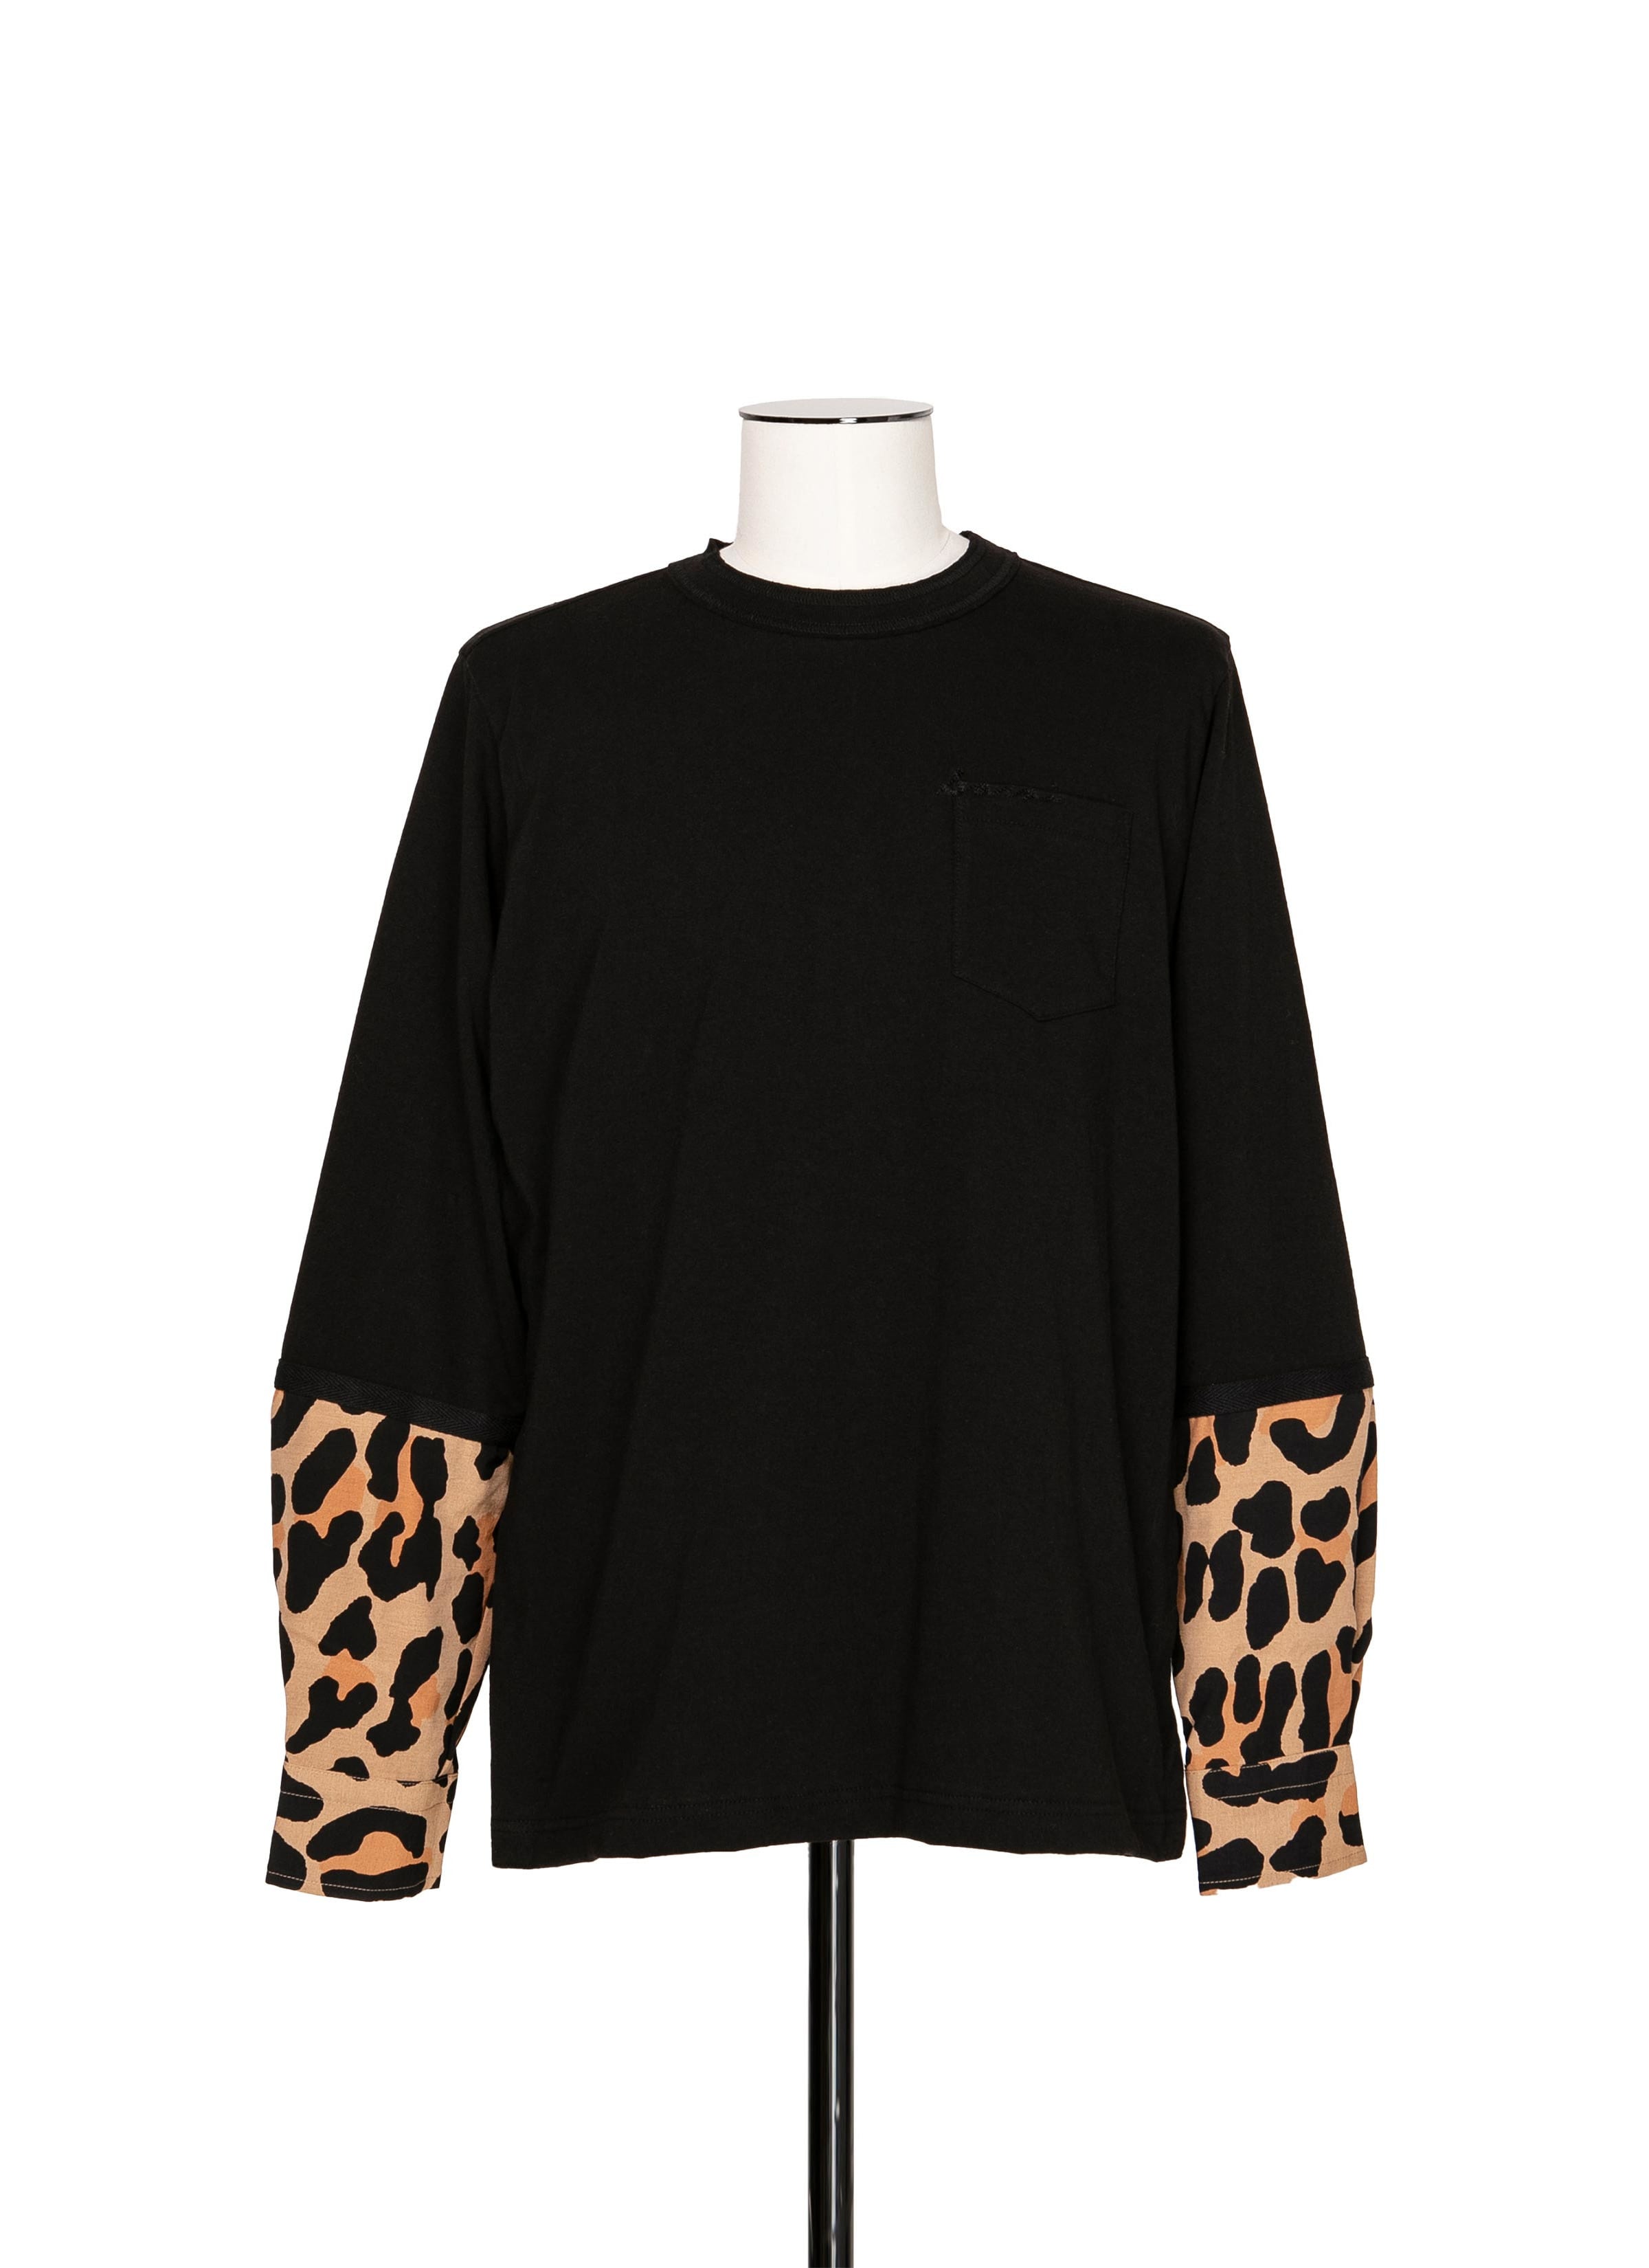 Leopard Print L/S T-Shirt 詳細画像 BLACK×BEIGE 1